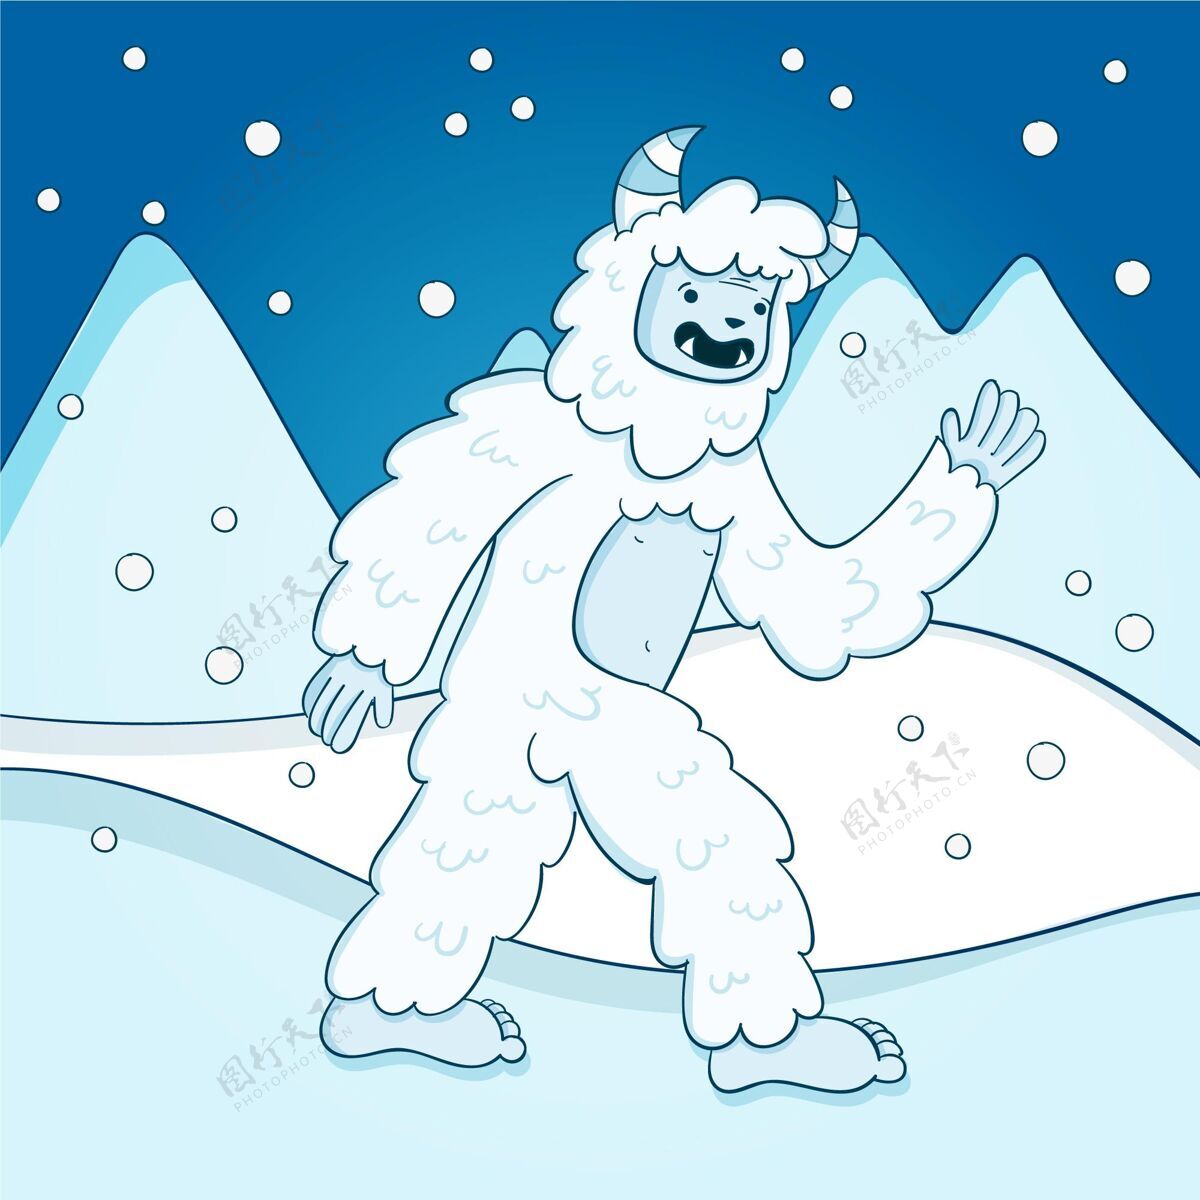 雪人手绘雪人可恶雪人插图生物插图怪物